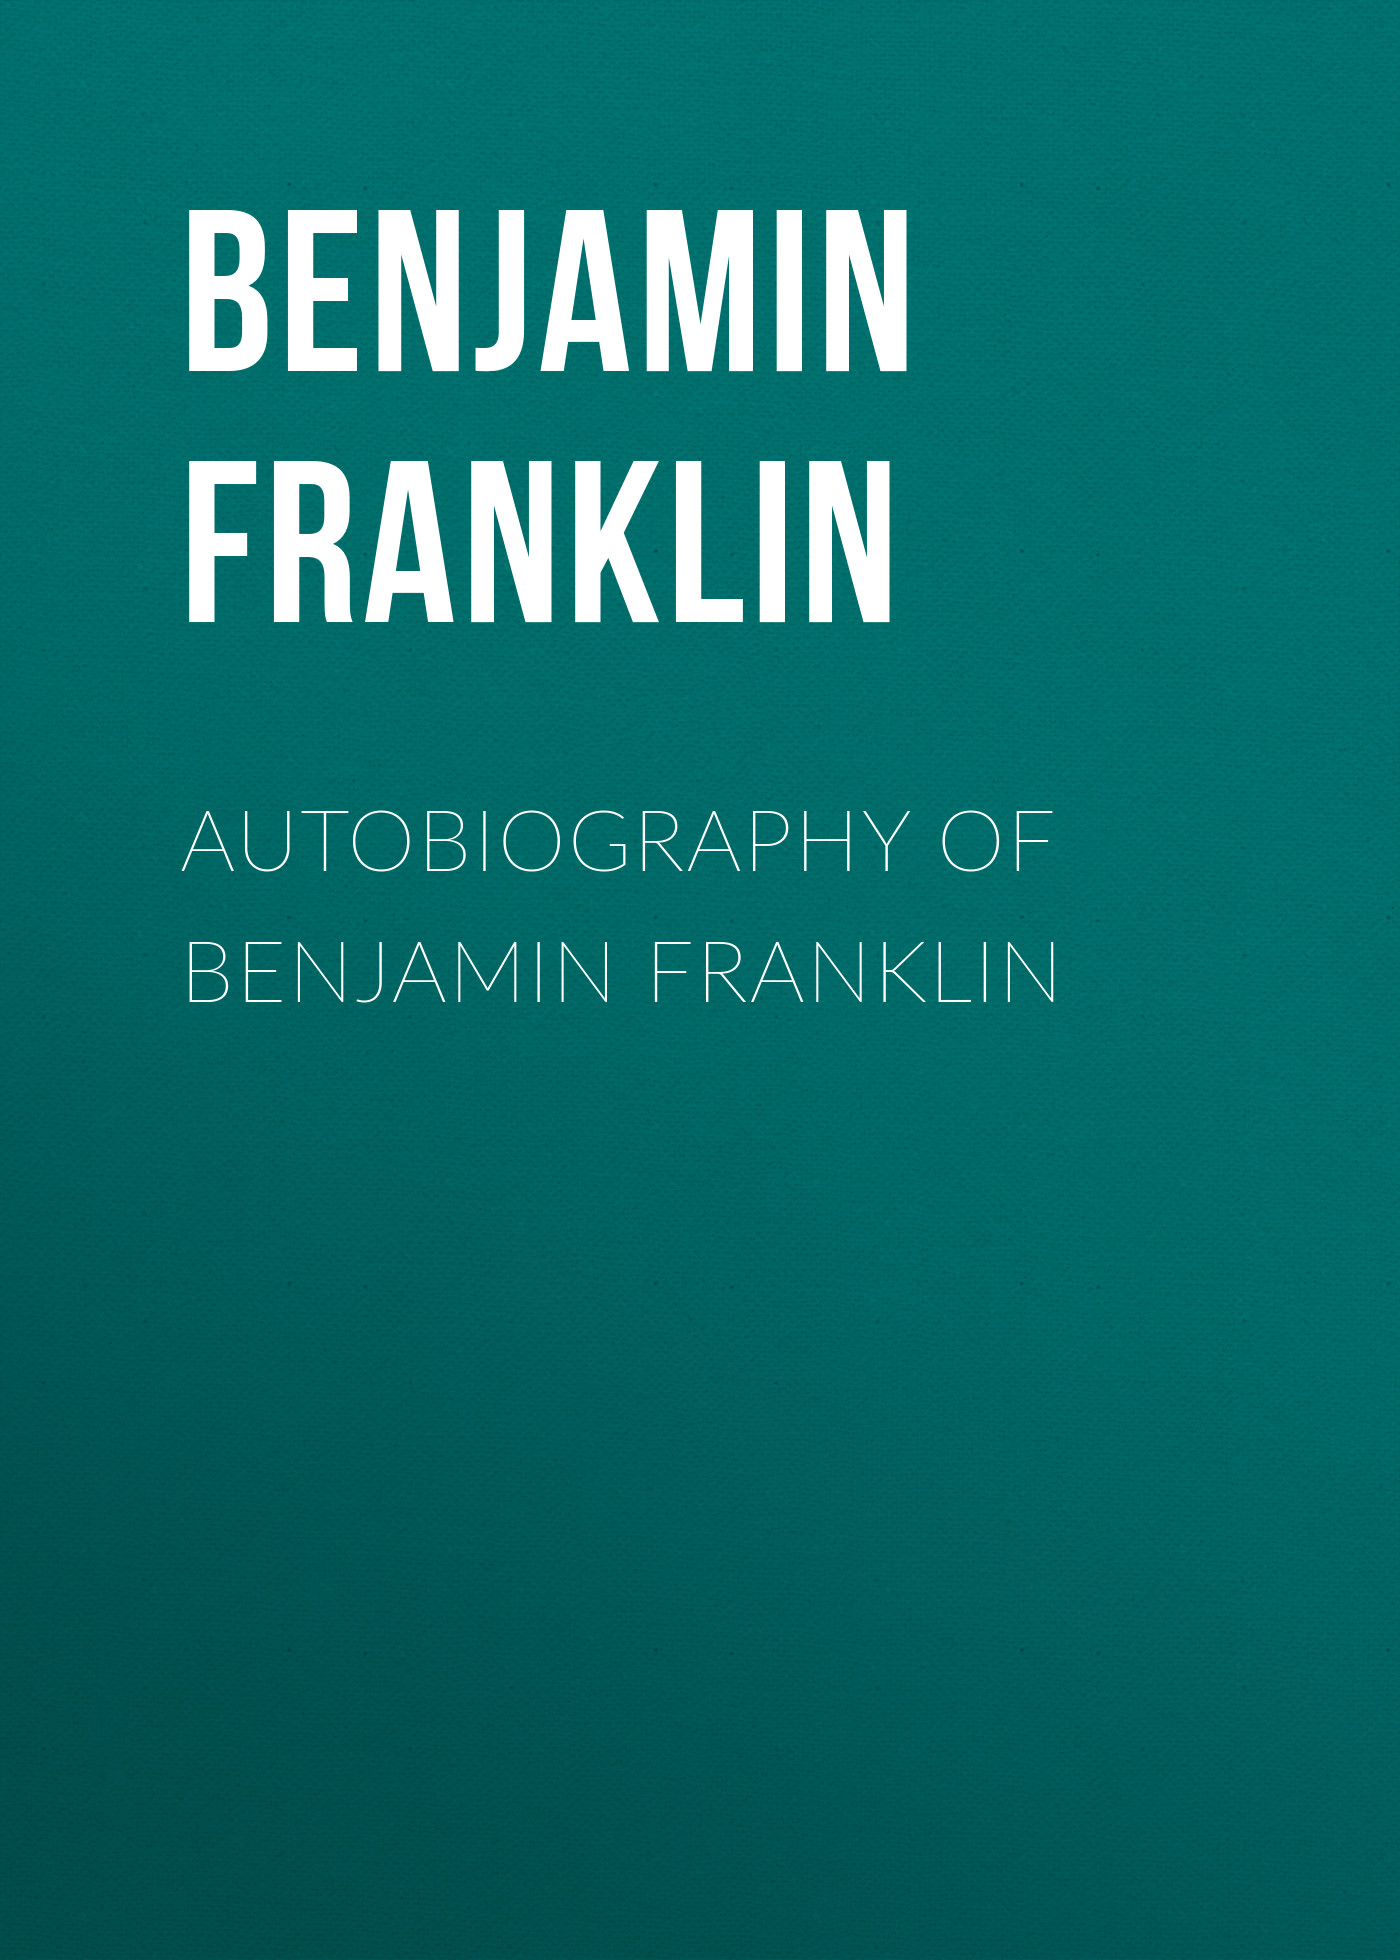 Книга Autobiography of Benjamin Franklin из серии , созданная Бенджамин Франклин, может относится к жанру Зарубежная классика, Зарубежная старинная литература. Стоимость электронной книги Autobiography of Benjamin Franklin с идентификатором 25202223 составляет 0 руб.